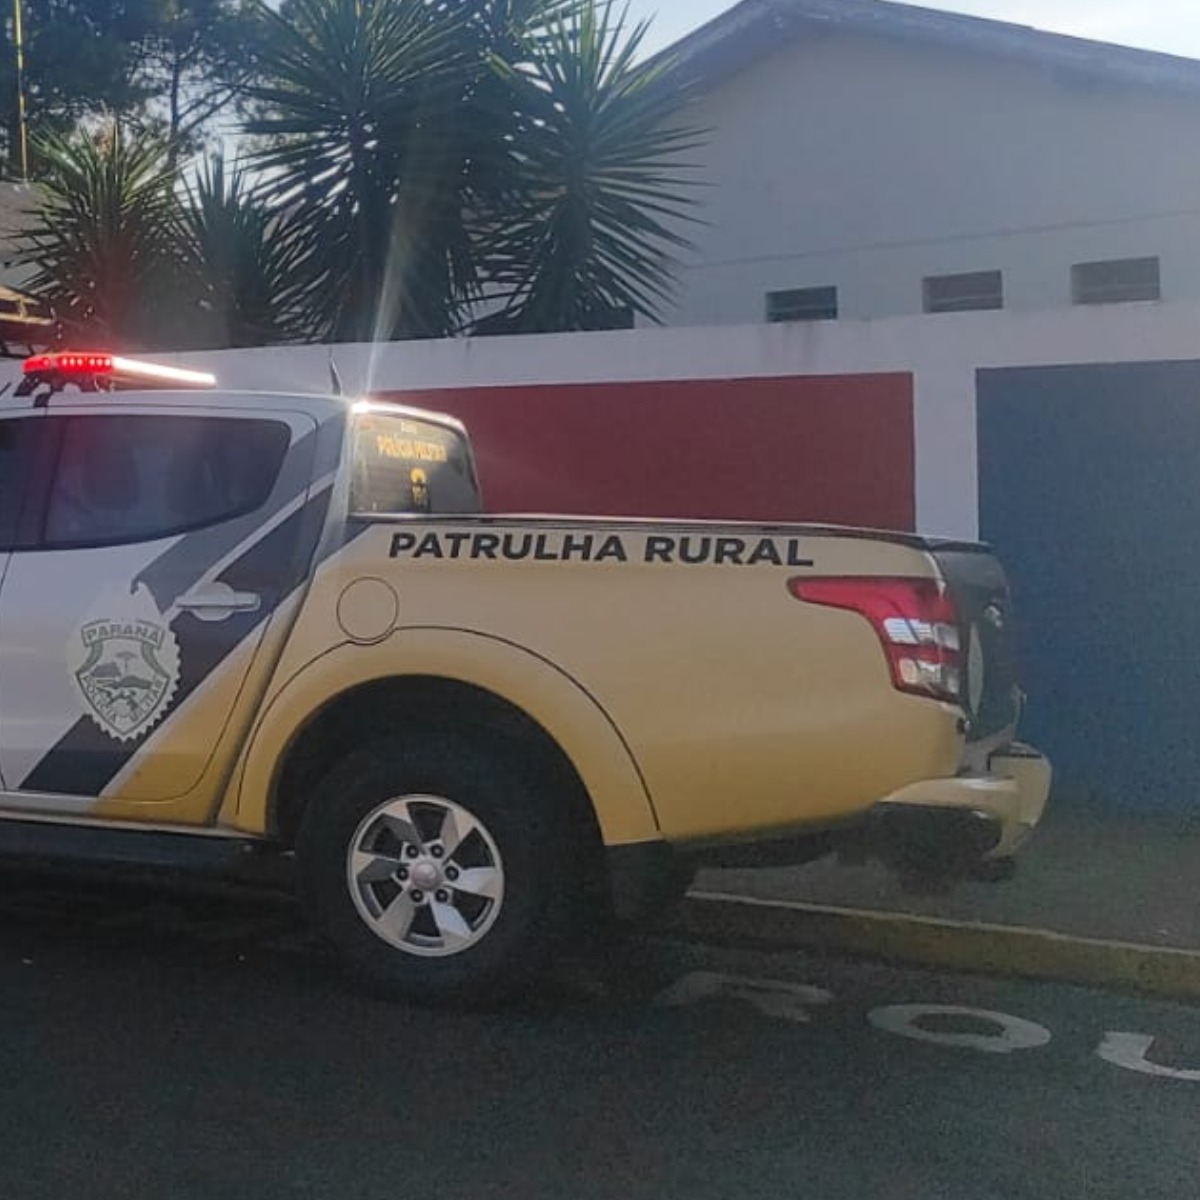  Ameaça em escola de Apucarana reforça policiamento nas escolas 